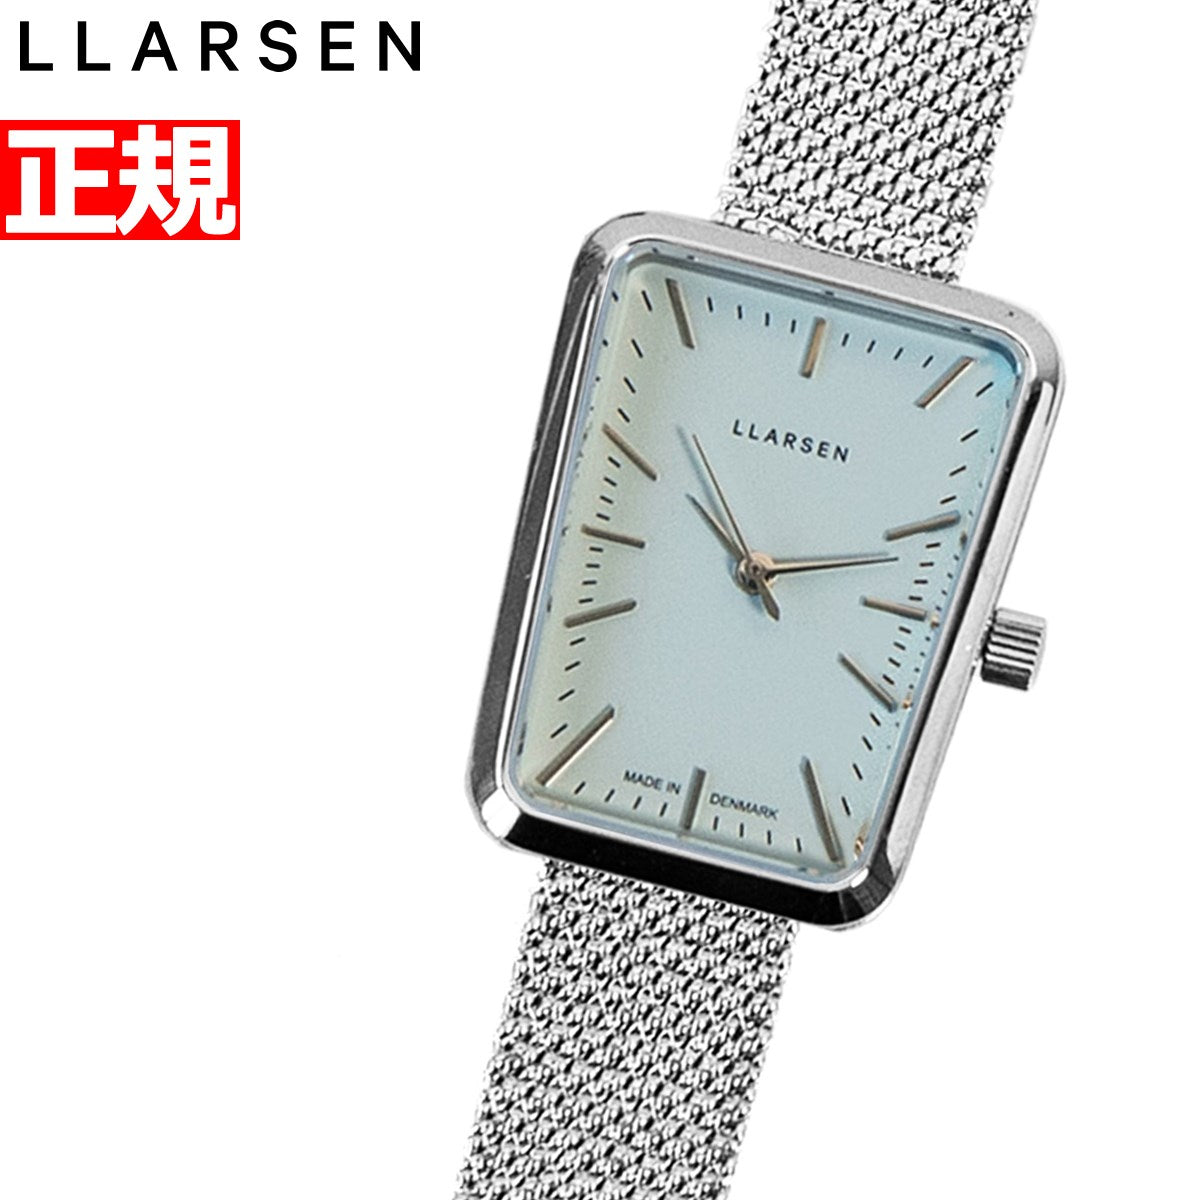 エルラーセン LLARSEN 腕時計 レディース セシリー Cecilie LL152SISMT